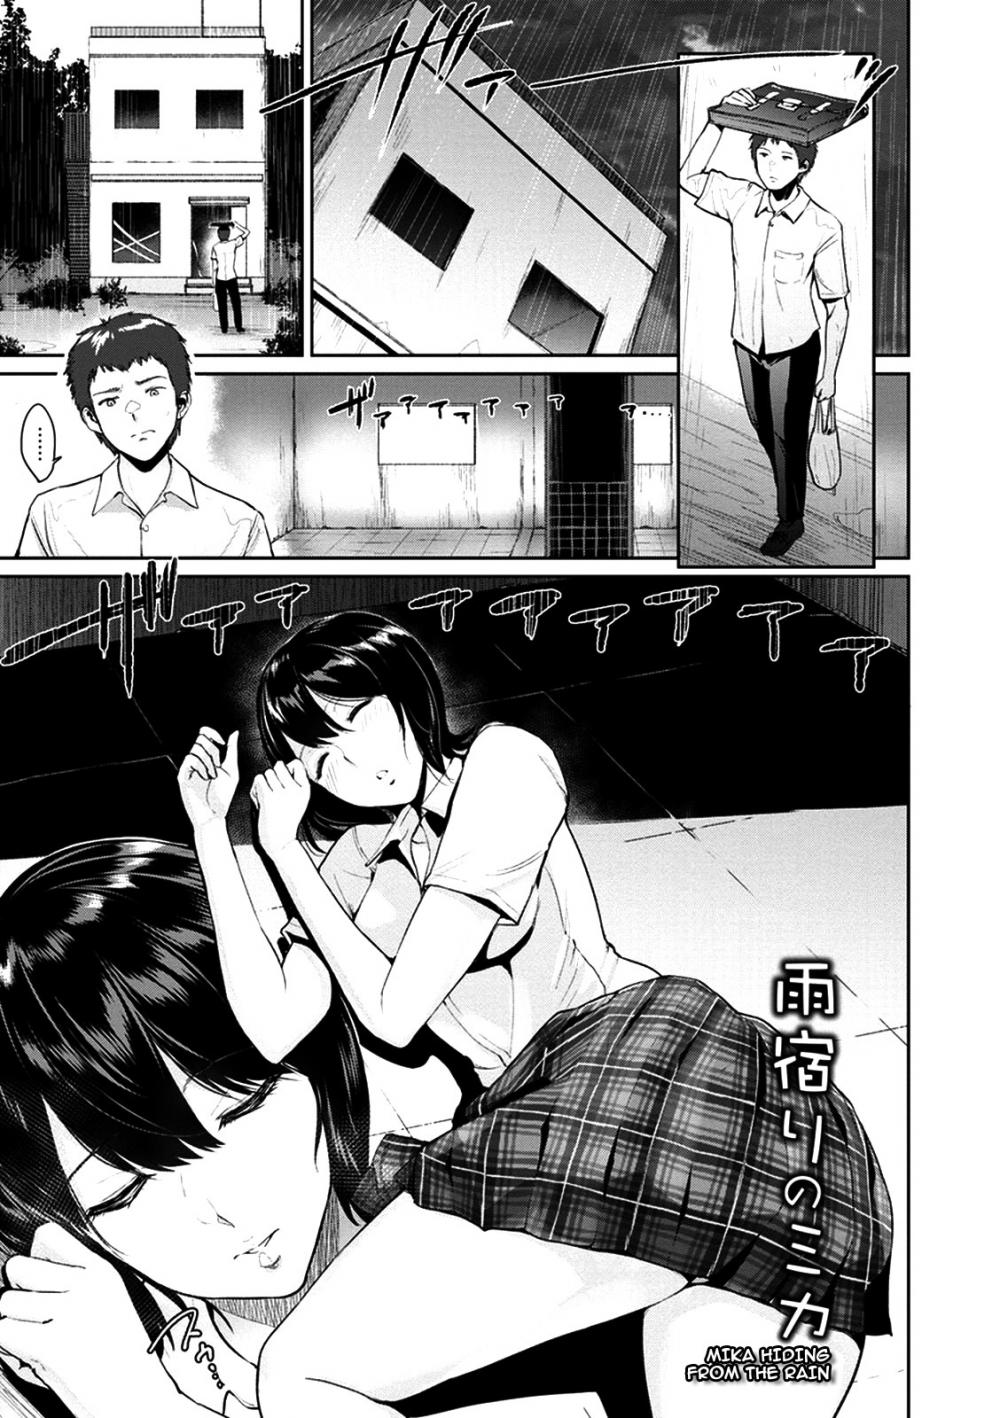 Hentai Manga Comic-Mika Hiding From The Rain-Read-1